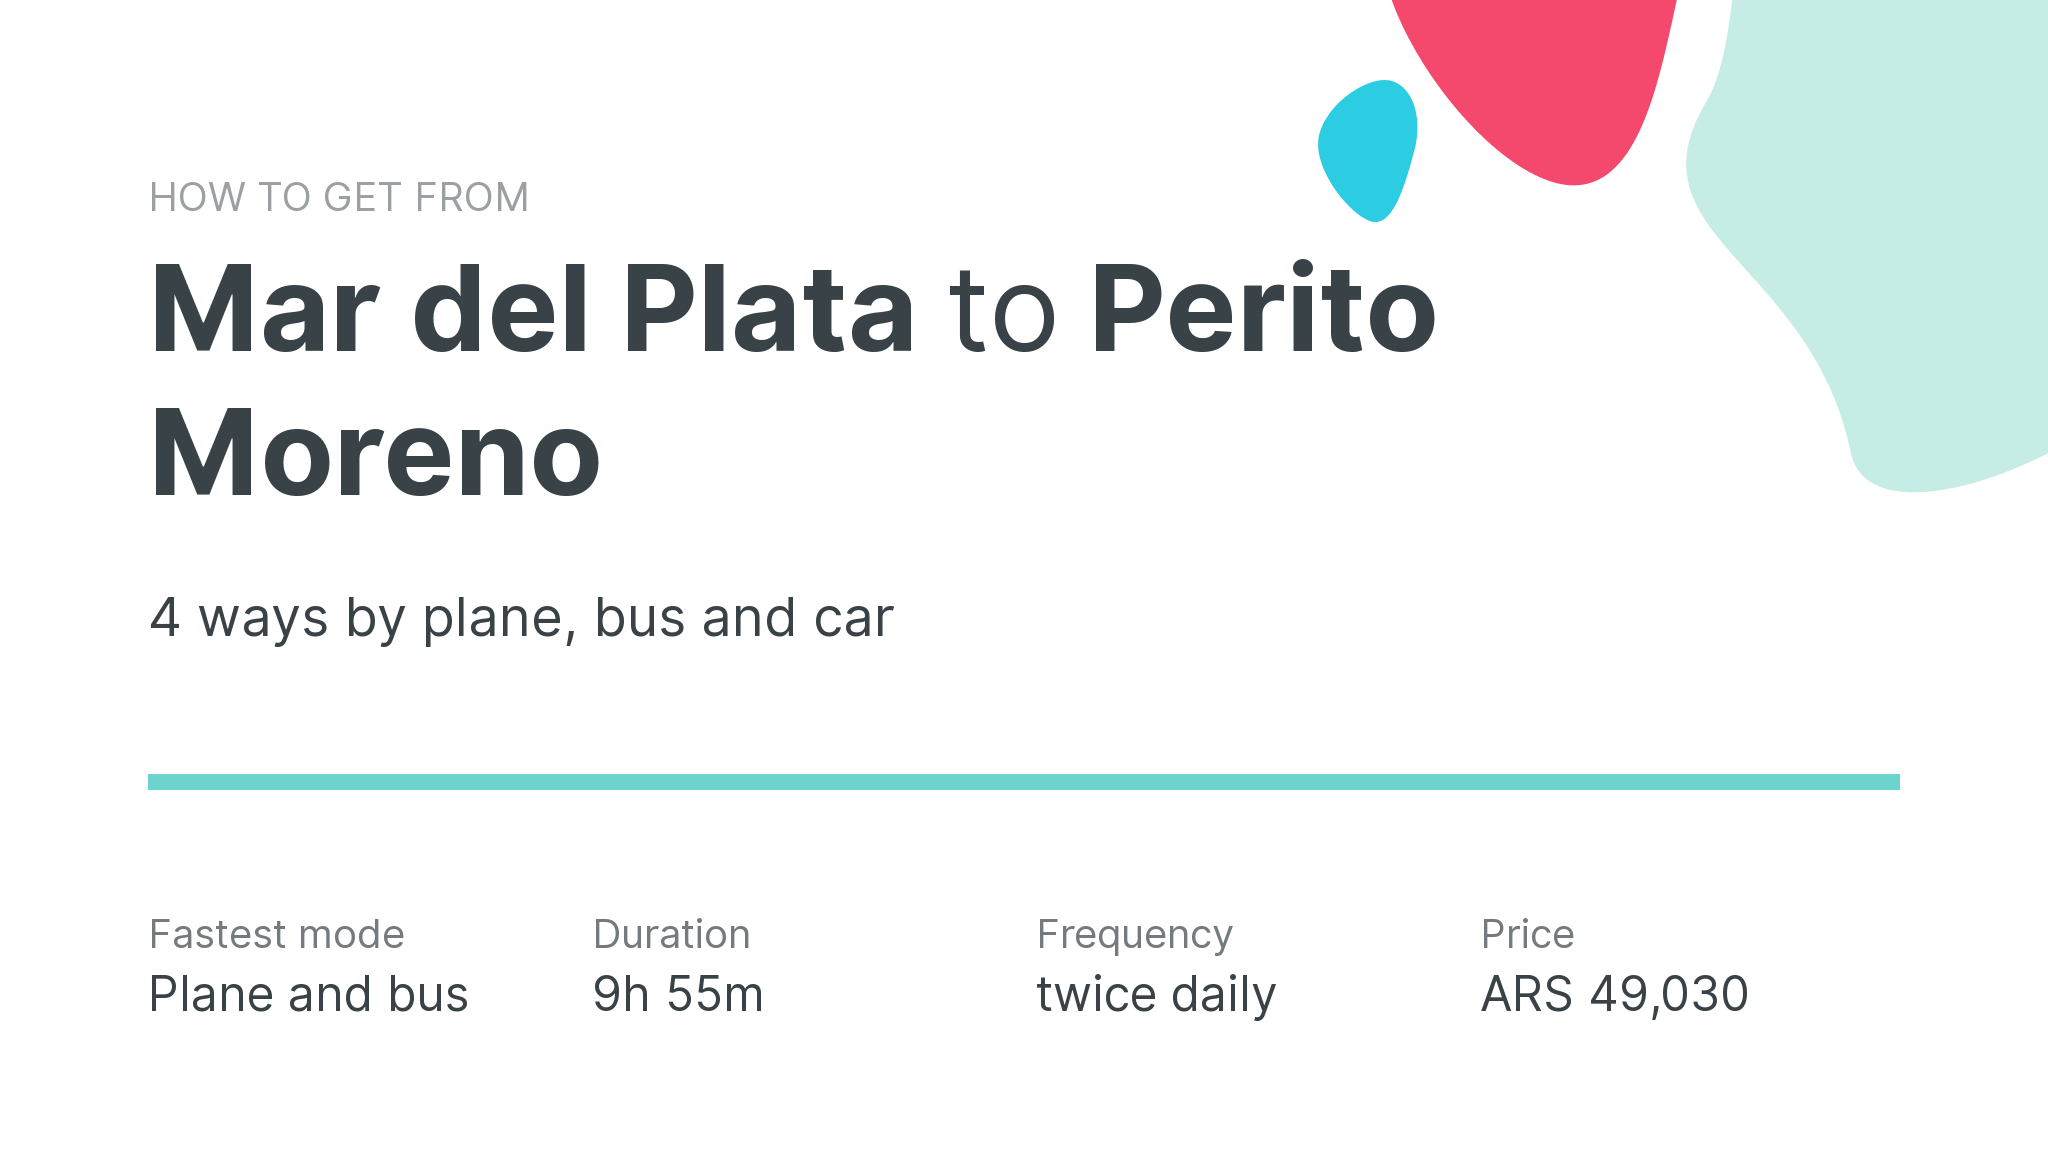 How do I get from Mar del Plata to Perito Moreno